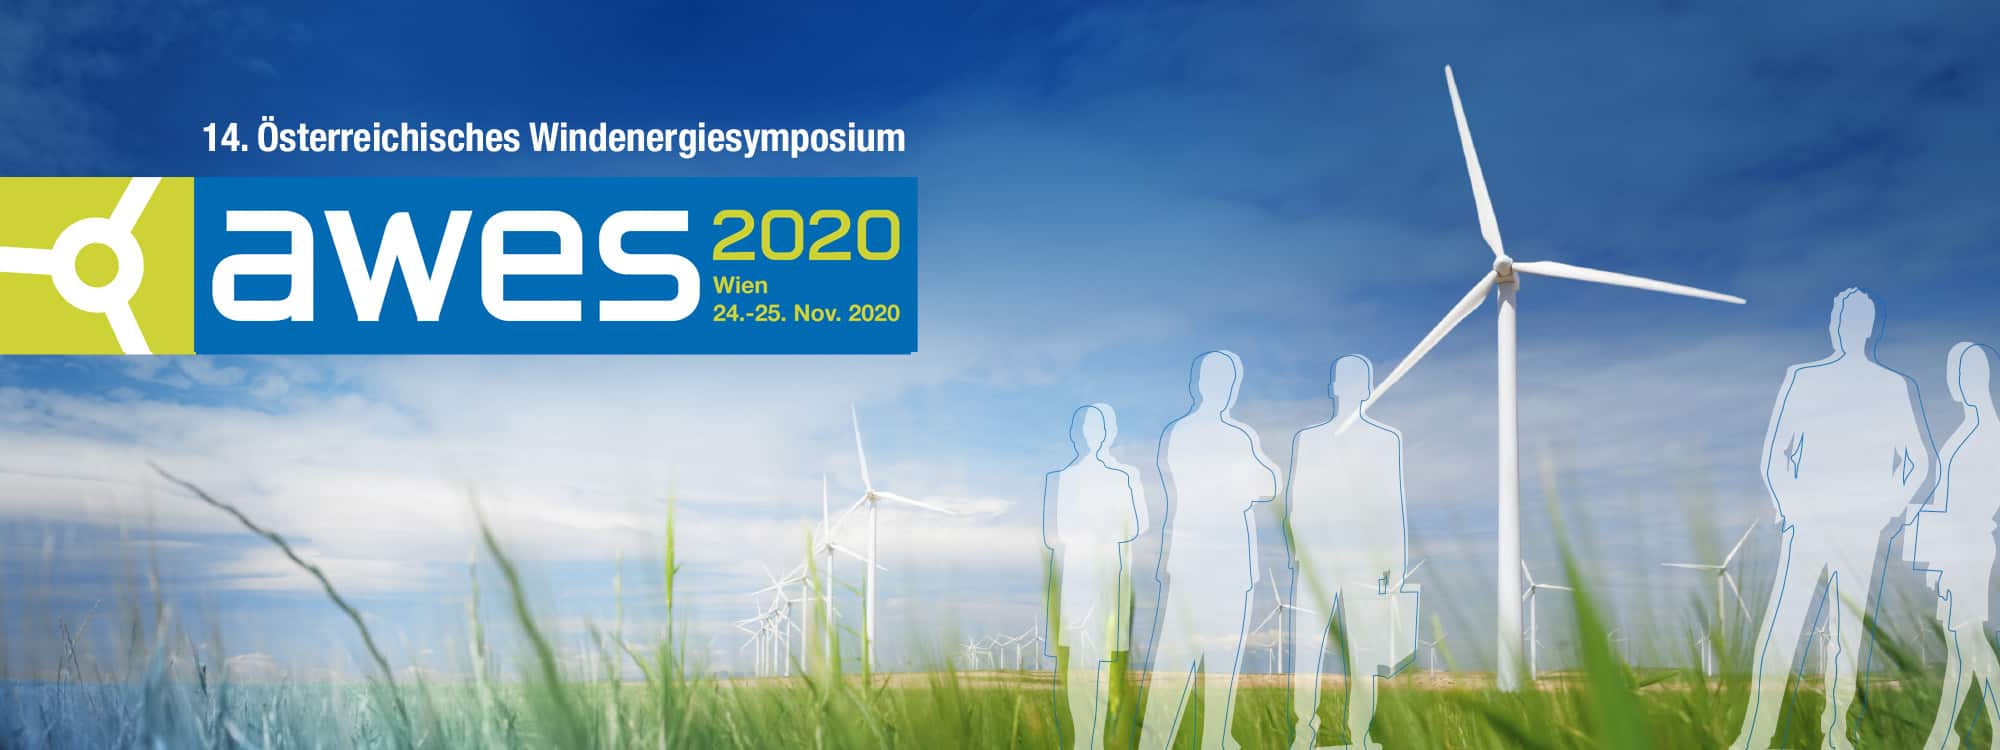 Foto: AWES 2020 - 14. österreichisches Windenergie Symposium